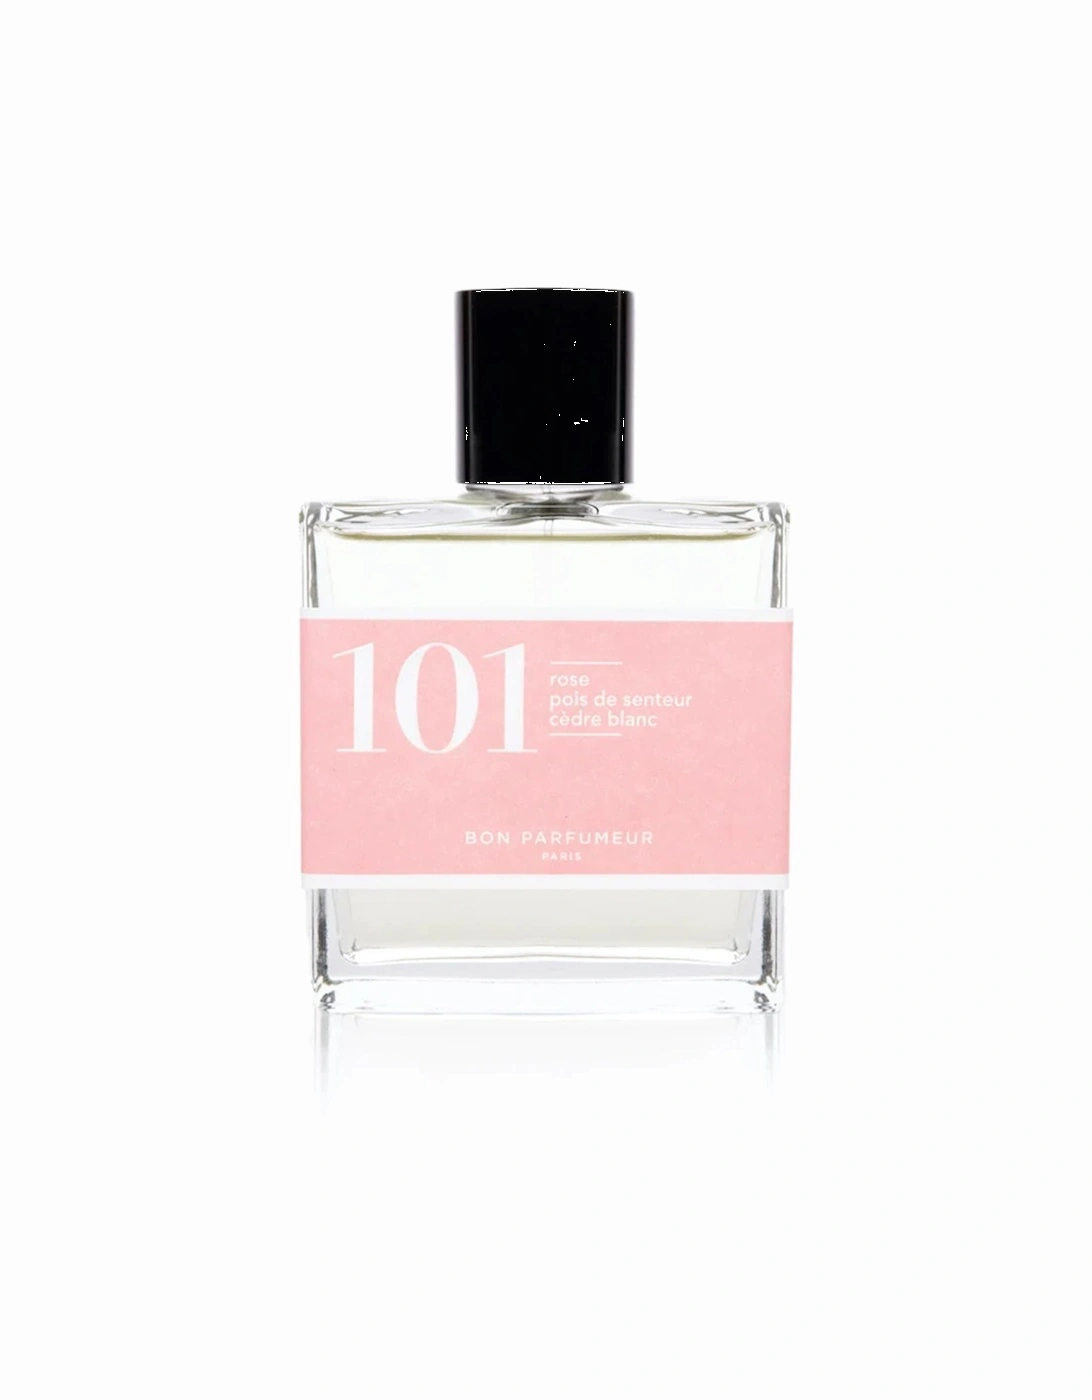 Eau de parfum 101: Rose/Sweetpea/White cedar, 2 of 1